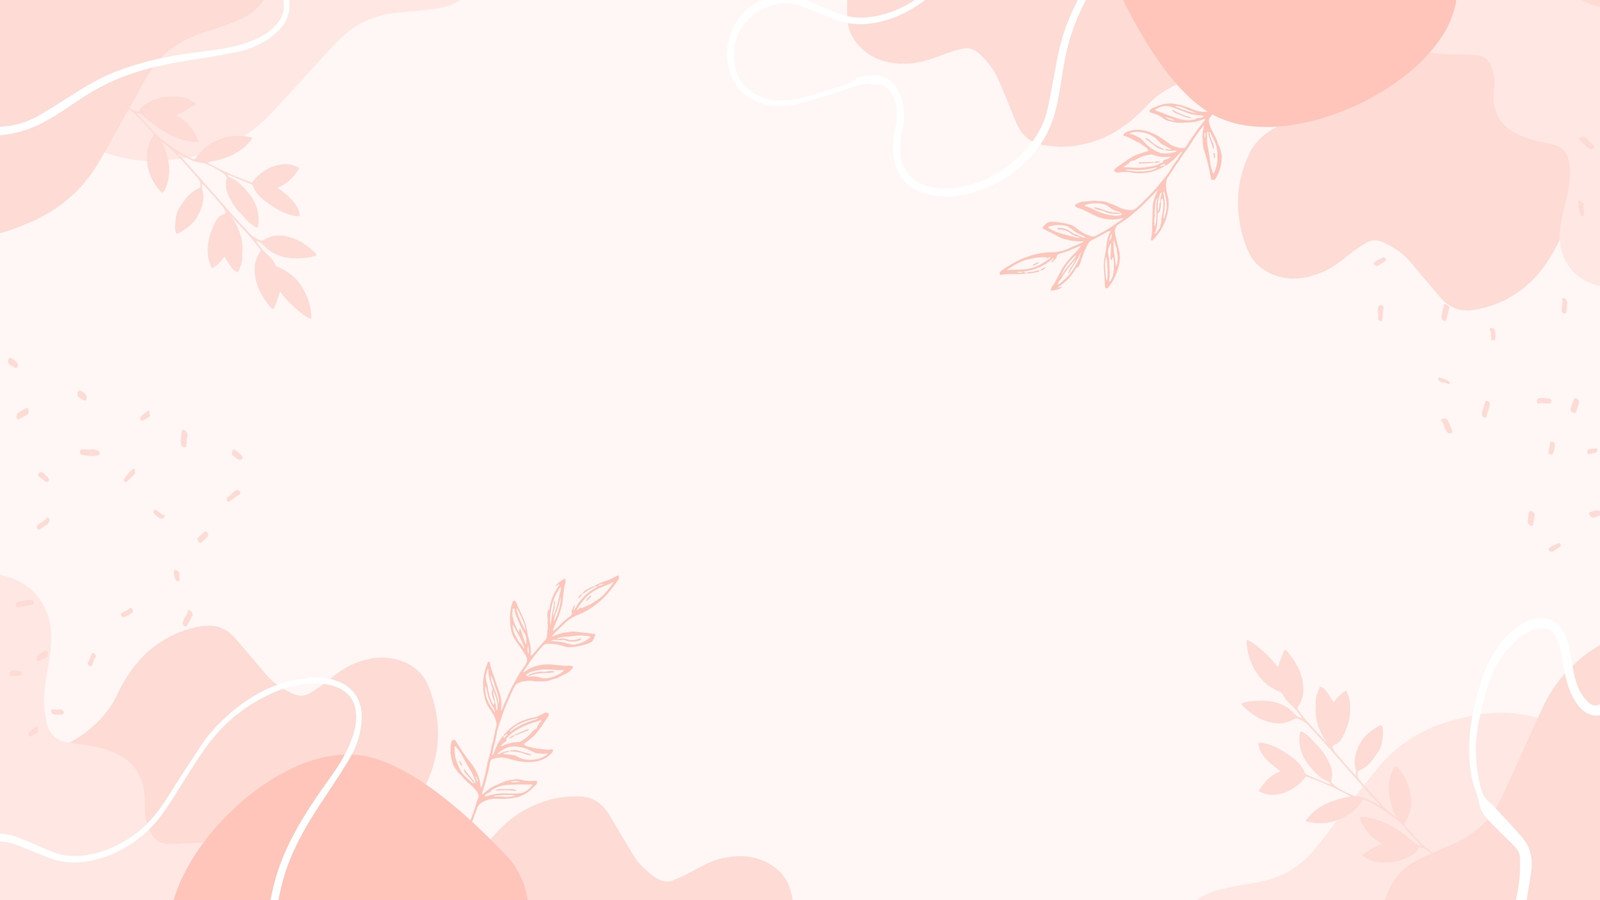 Floral Desktop Wallpaper: Hãy thay đổi hình nền máy tính của bạn với một hình nền độc đáo tôn lên vẻ đẹp của hoa hồng, đồng hoa và các loại hoa khác. Với hình ảnh này, bạn sẽ tận hưởng sự tươi mới và cảm giác đầy sống động khi sử dụng máy tính. Hãy nhấp chuột để tải về và trang trí màn hình của bạn. 